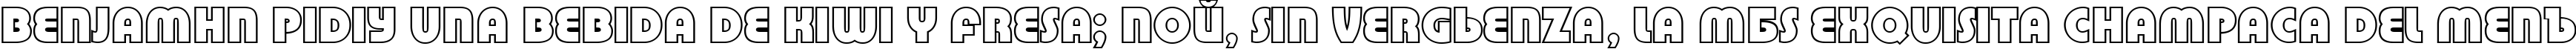 Пример написания шрифтом a_BighausTitulOtl текста на испанском